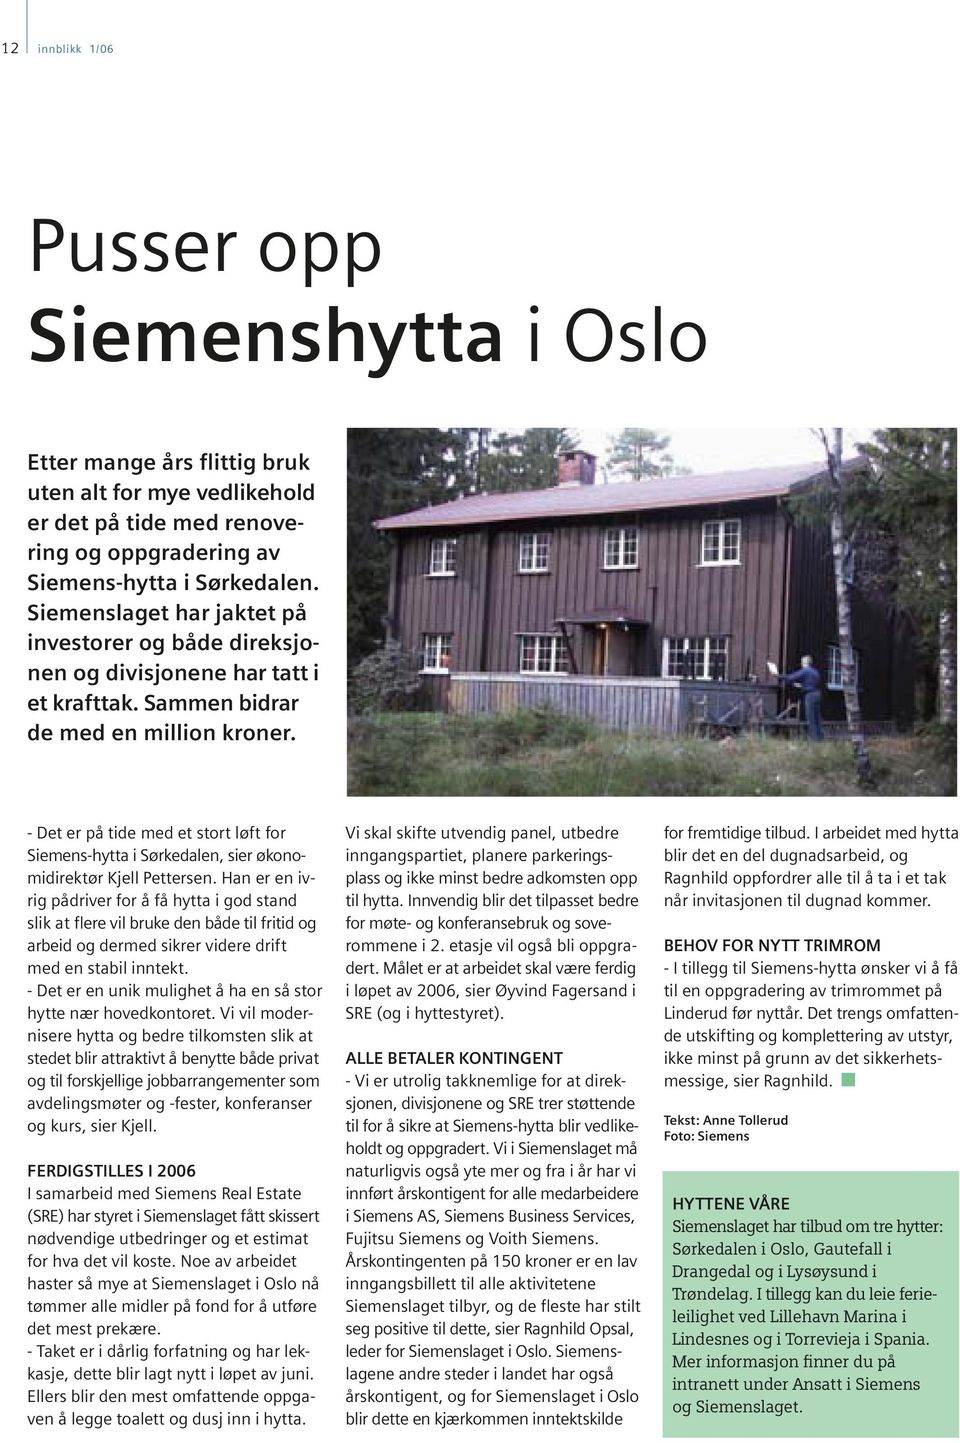 - Det er på tide med et stort løft for Siemens-hytta i Sørkedalen, sier økonomidirektør Kjell Pettersen.